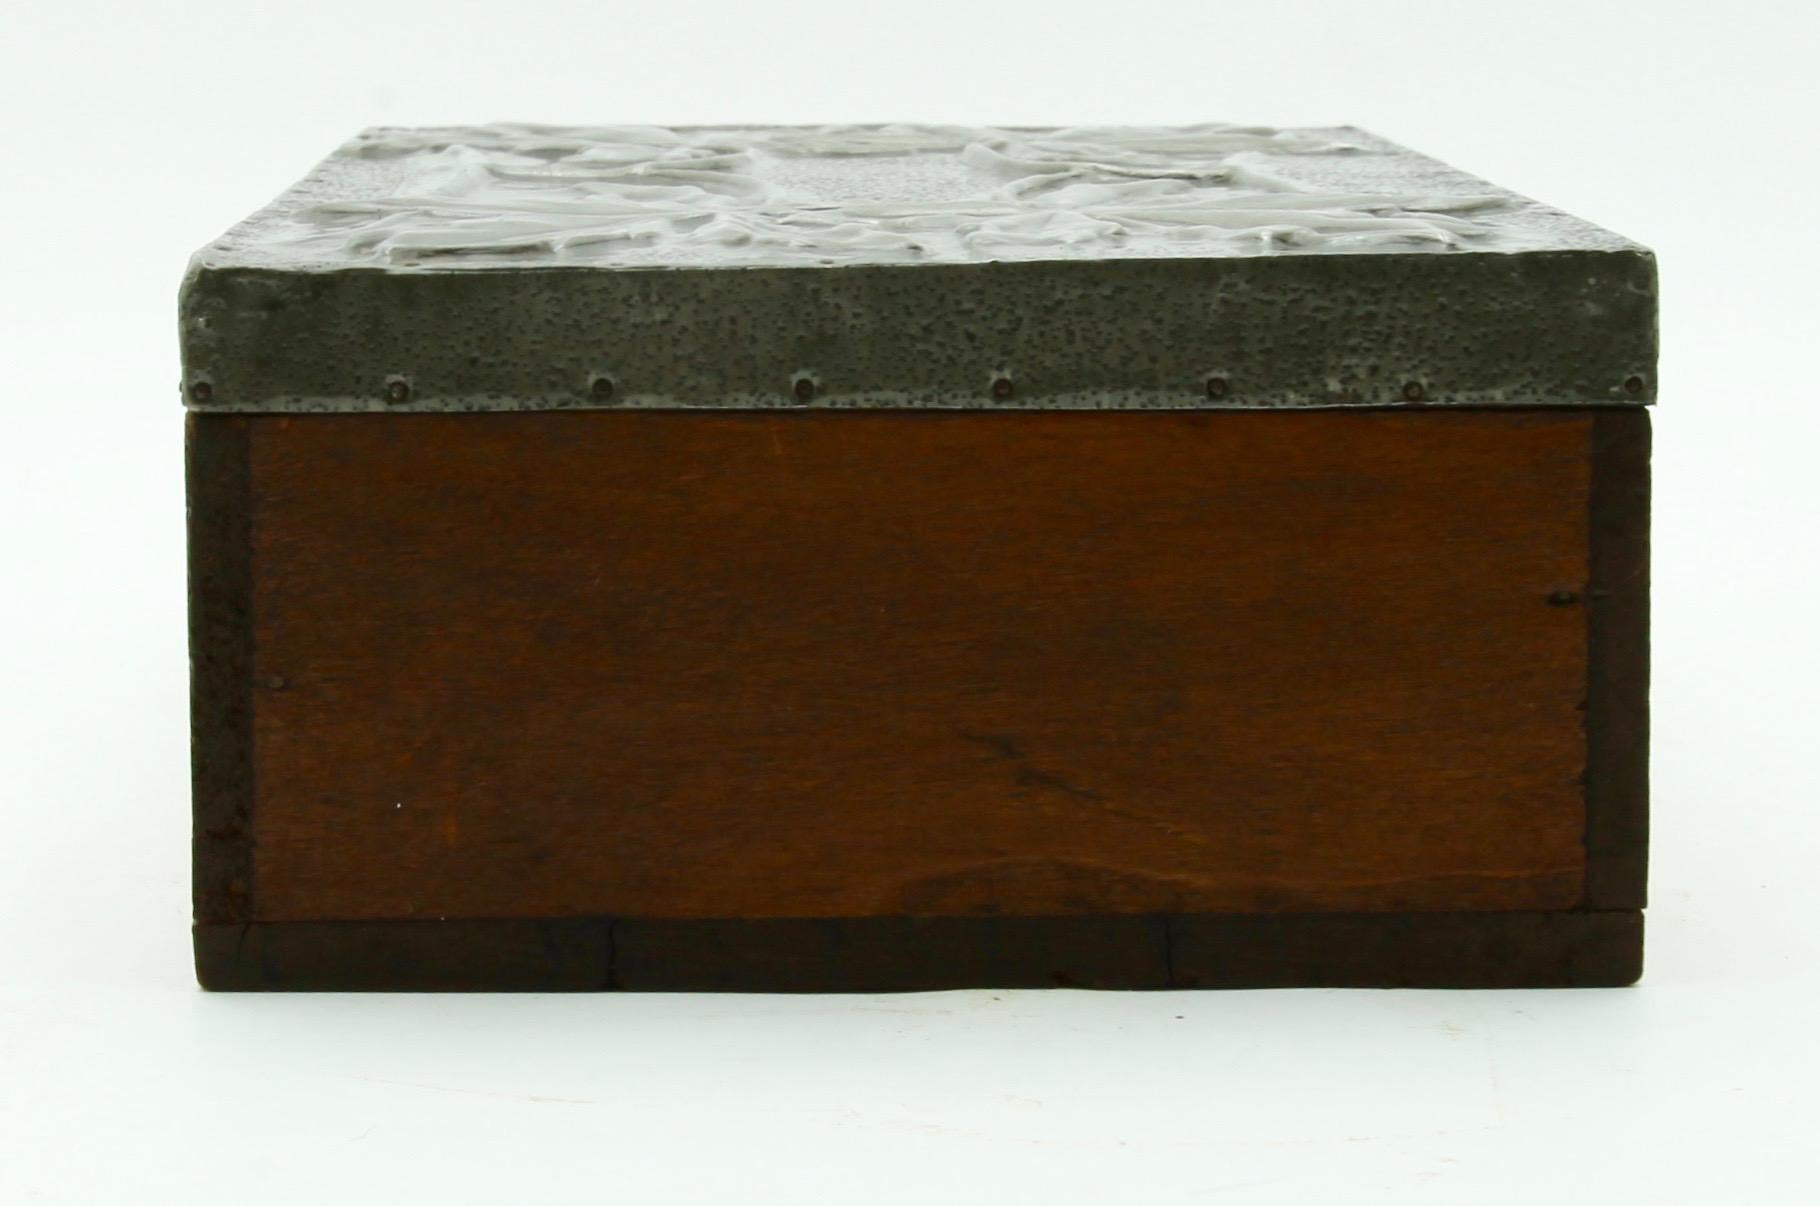 Sheet Metal Arts & Crafts Box with Decorative Metal Work, circa 1920